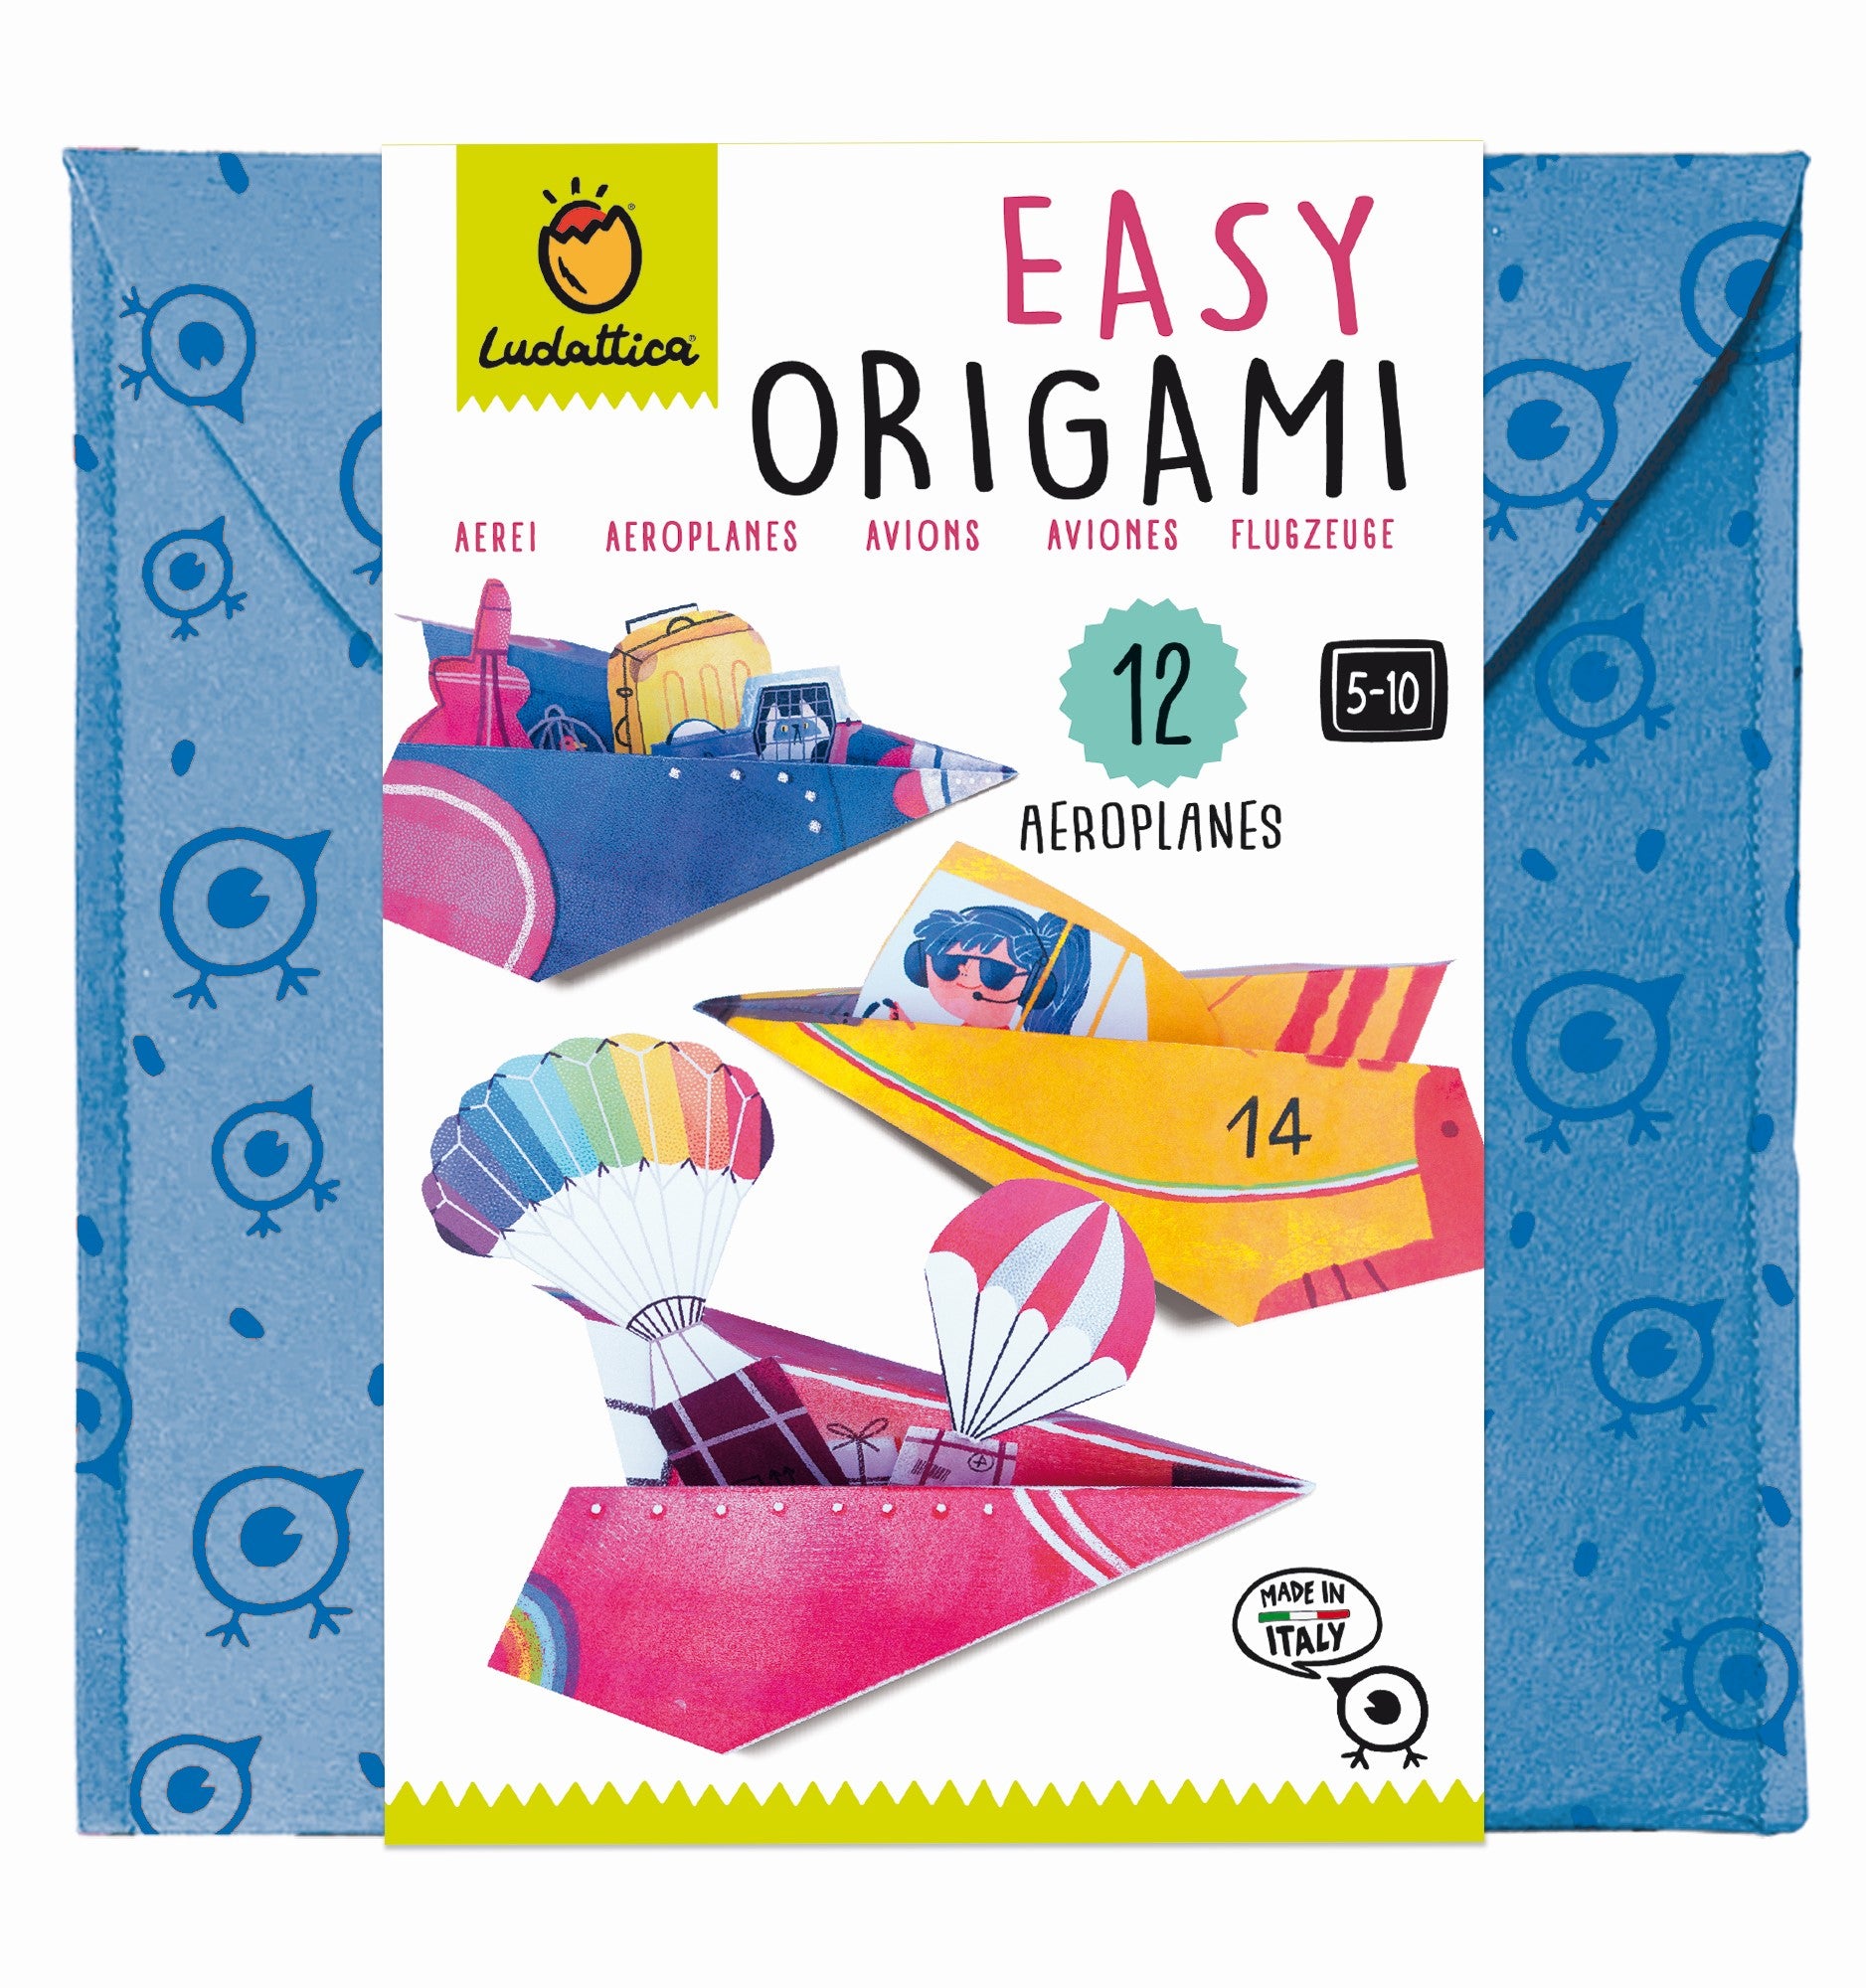 LEDATTICA: Origami planes creative set